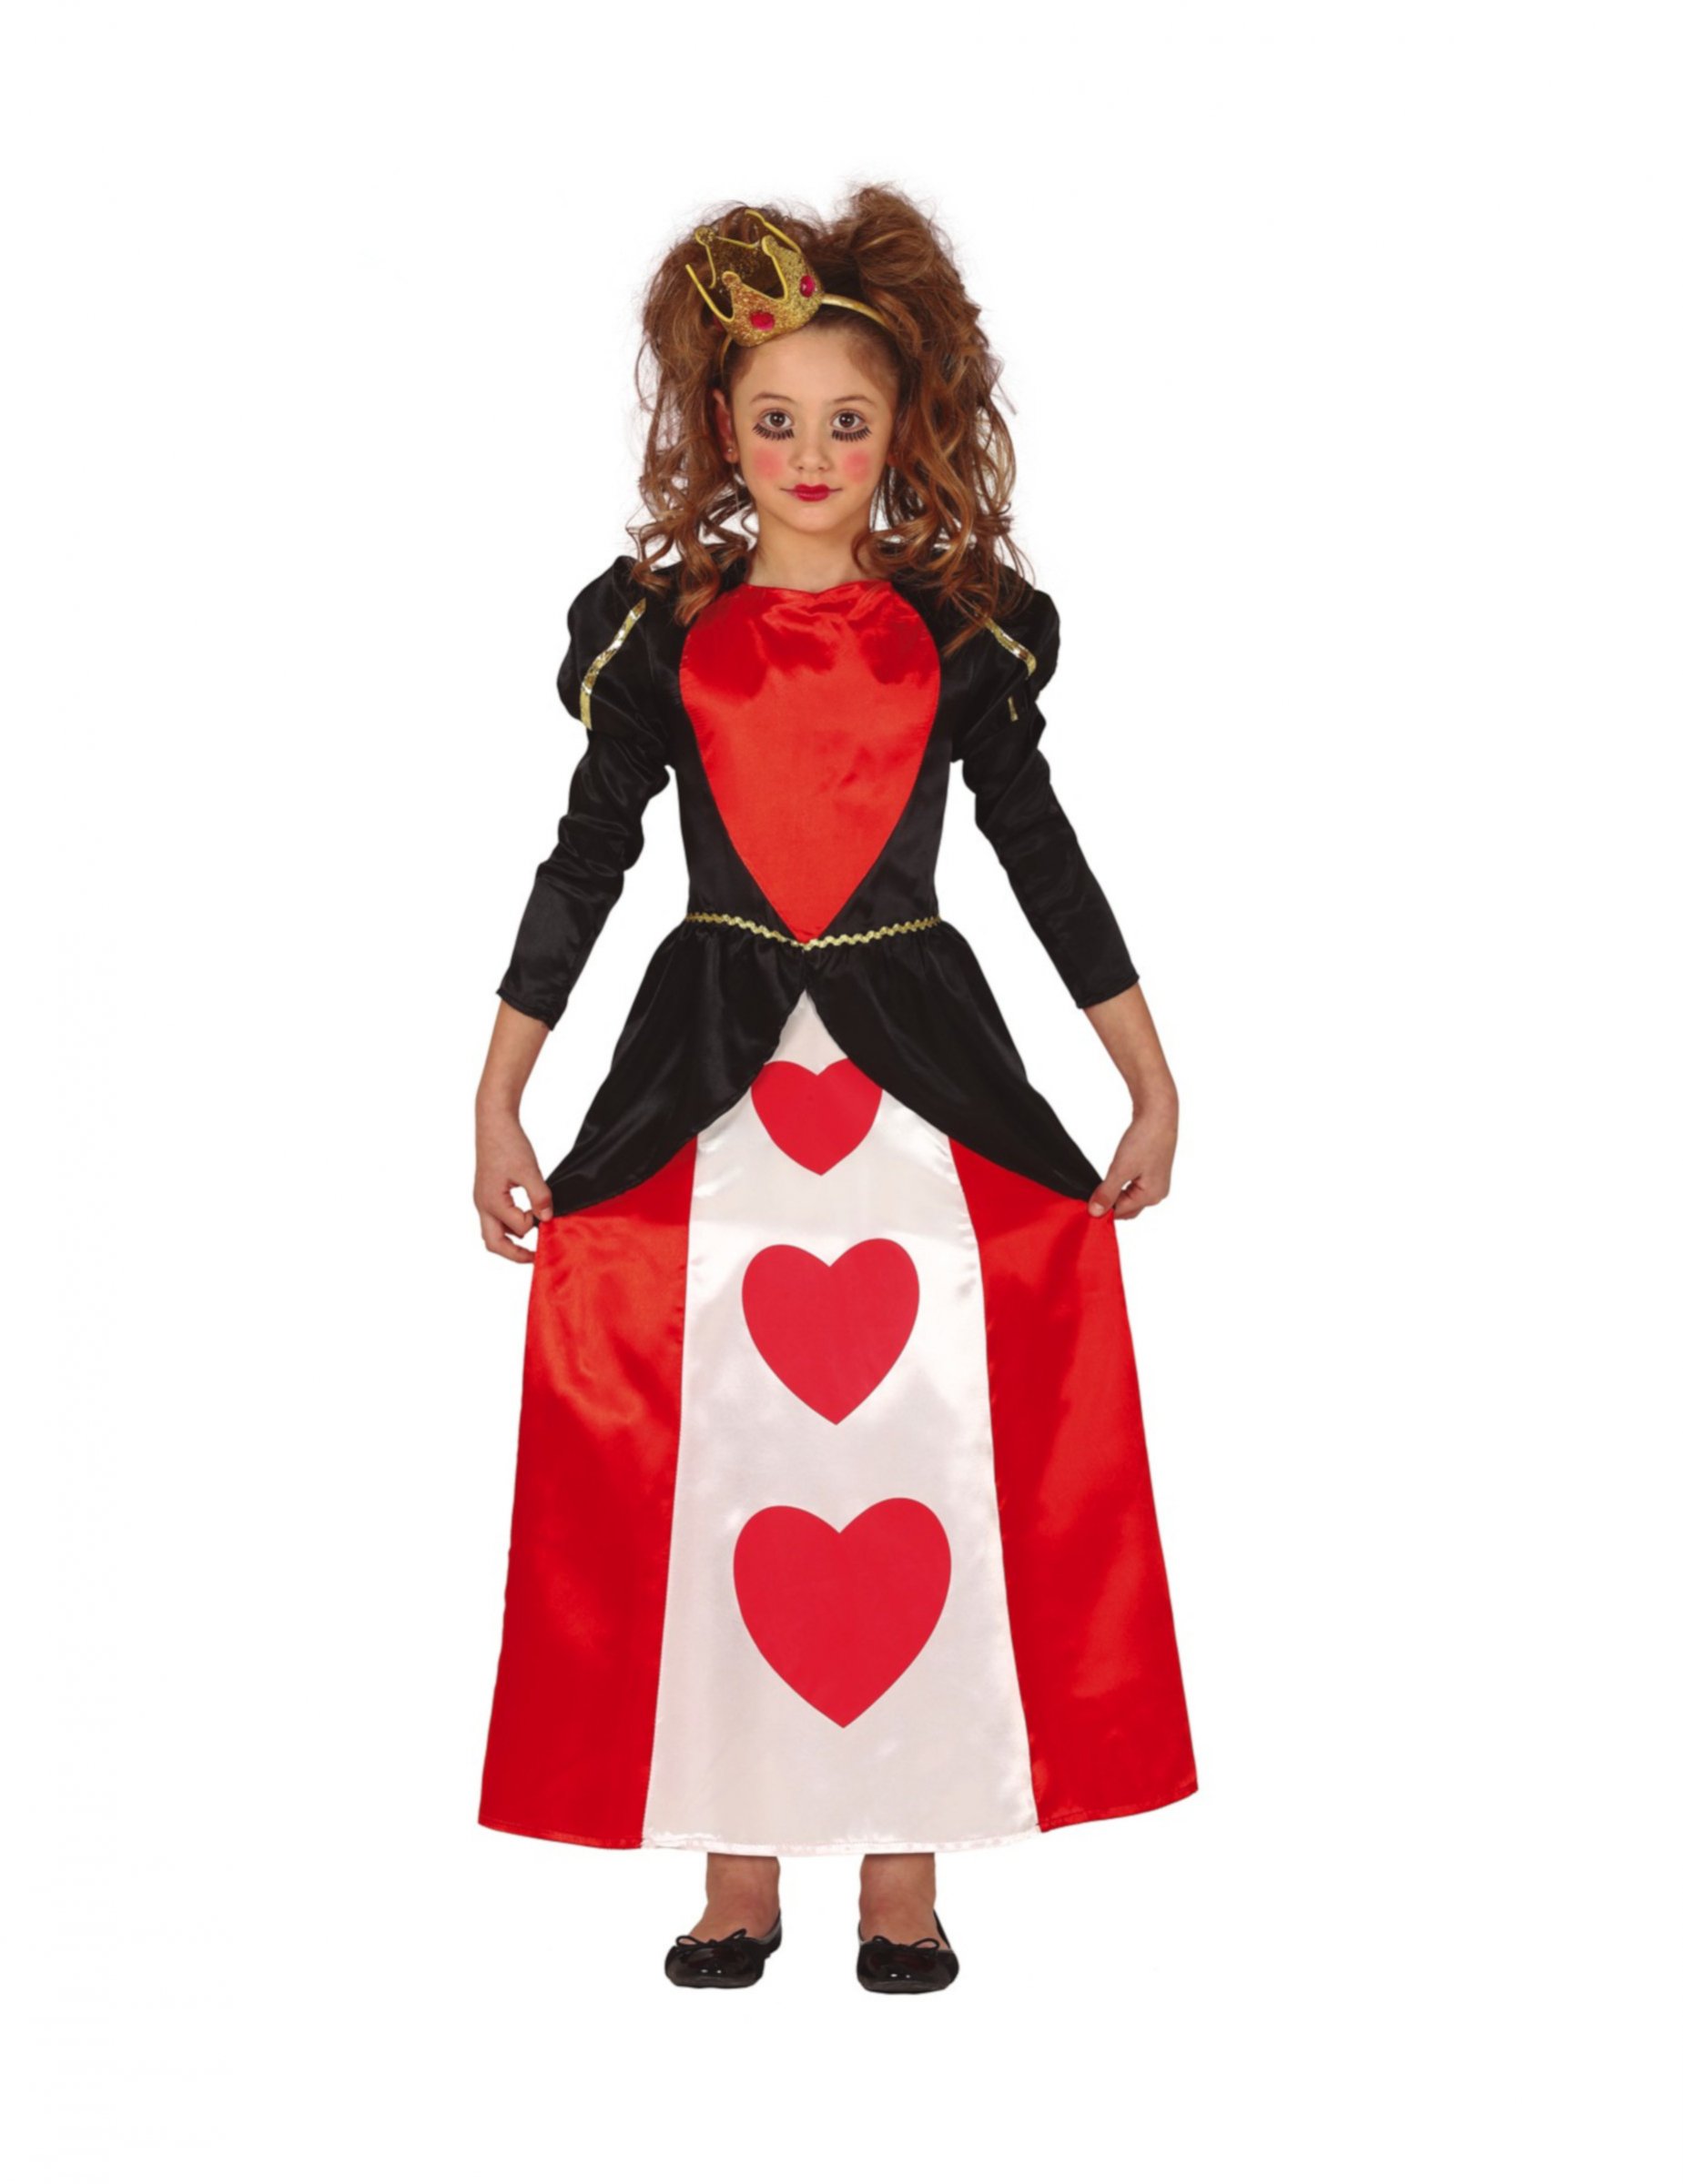 Herzkönigin-Kostüm für Mädchen Märchenkostüm Fasching rot-schwarz-weiss von FIESTAS GUIRCA, S.L.